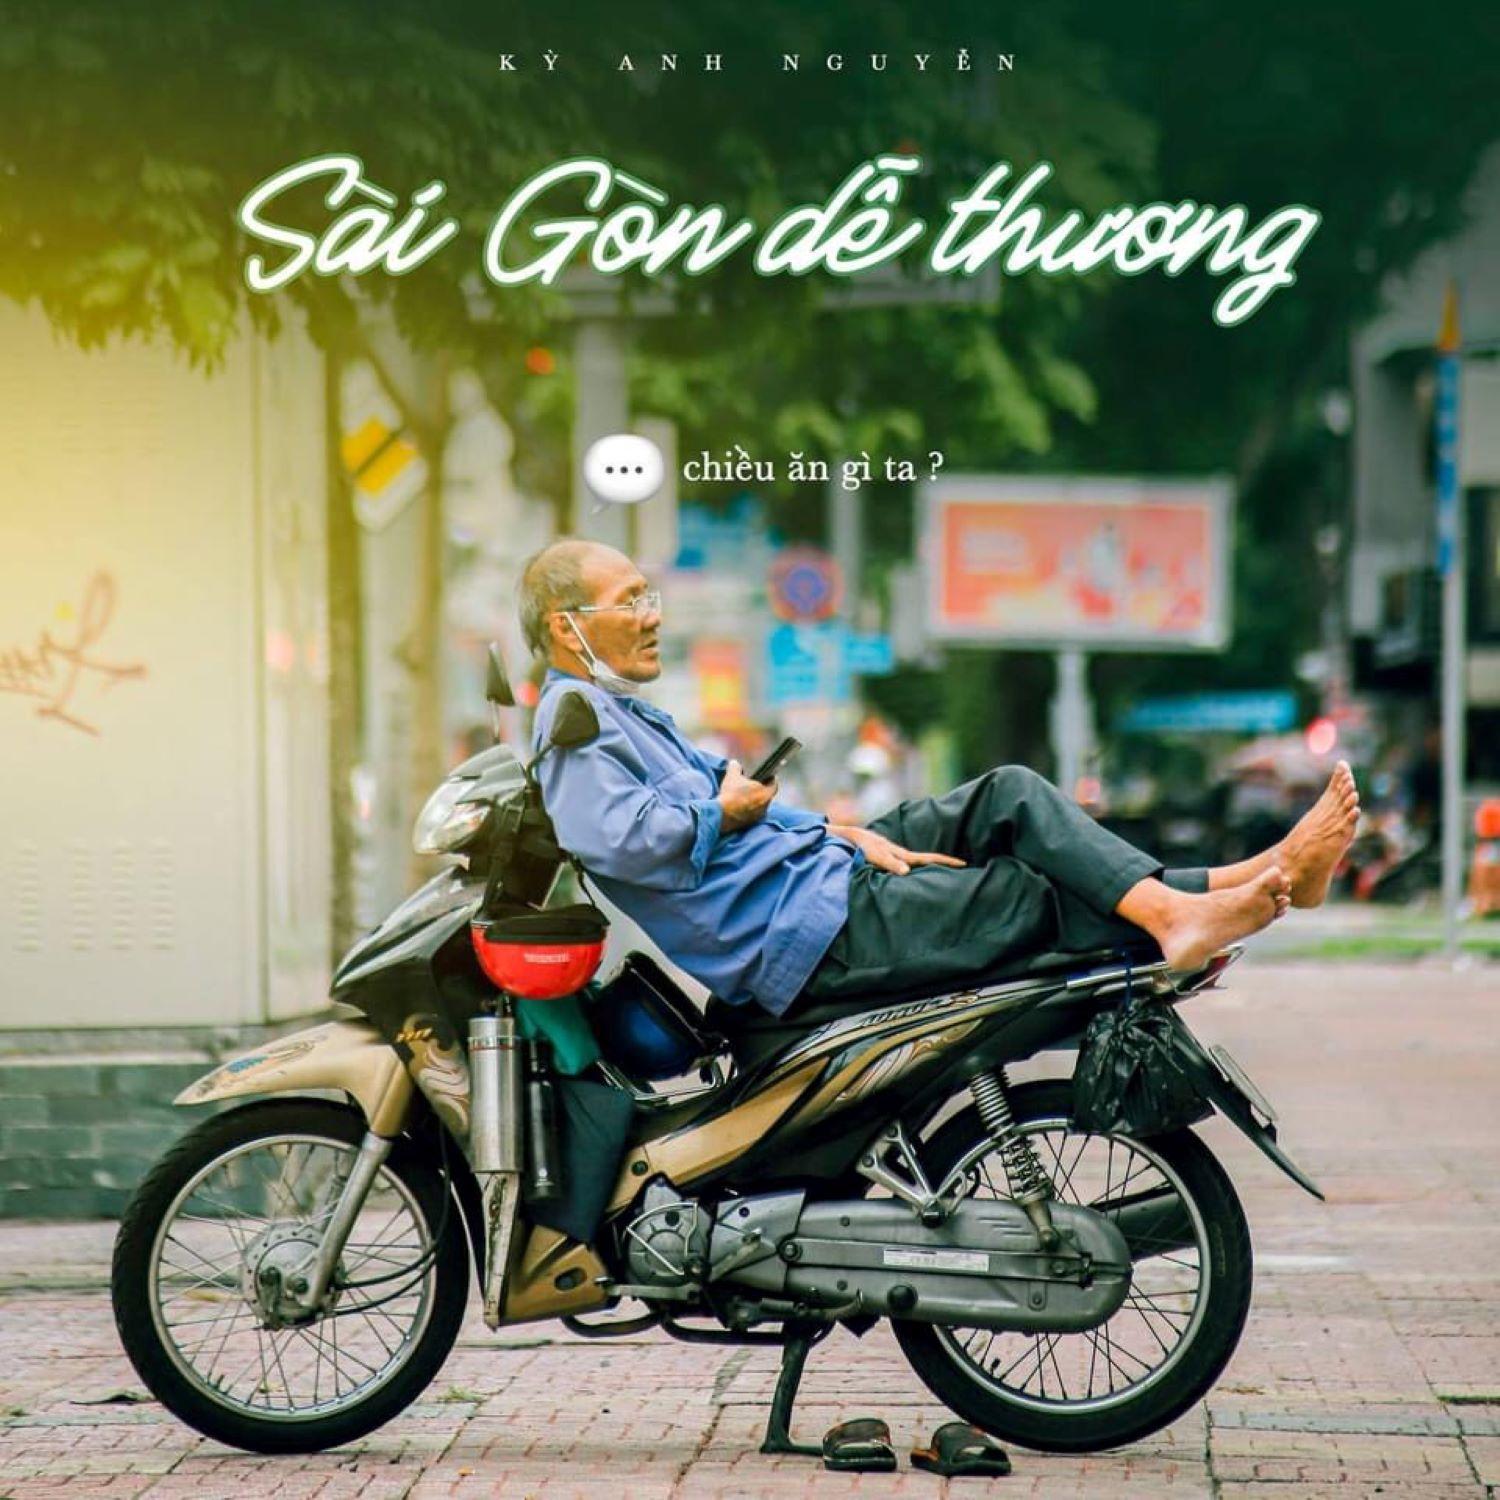 Sài Gòn là thành phố vô cùng sôi động và đầy màu sắc. Bạn sẽ thấy những khung cảnh đẹp nhất của thành phố này qua hình ảnh.